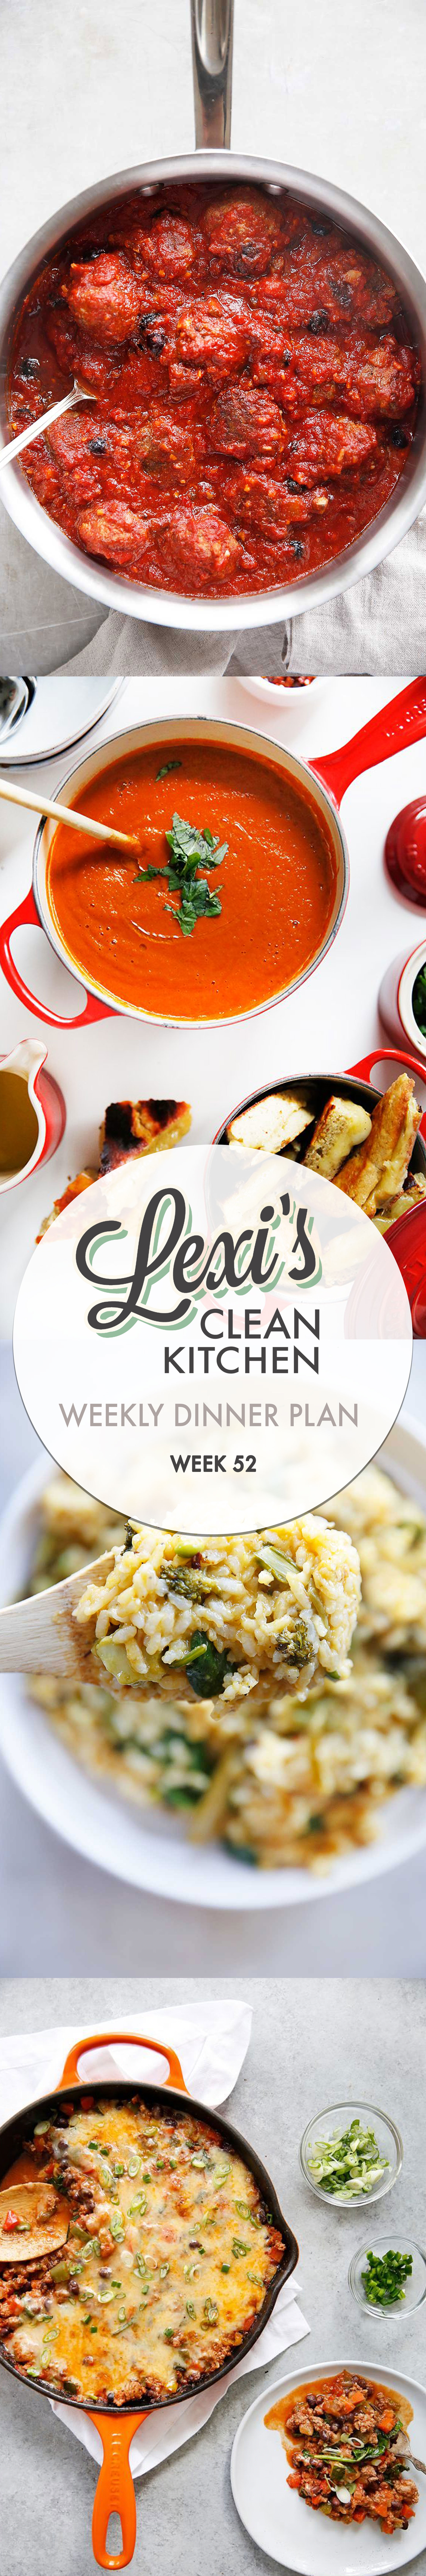 lexi’s weekly dinner plan week 52